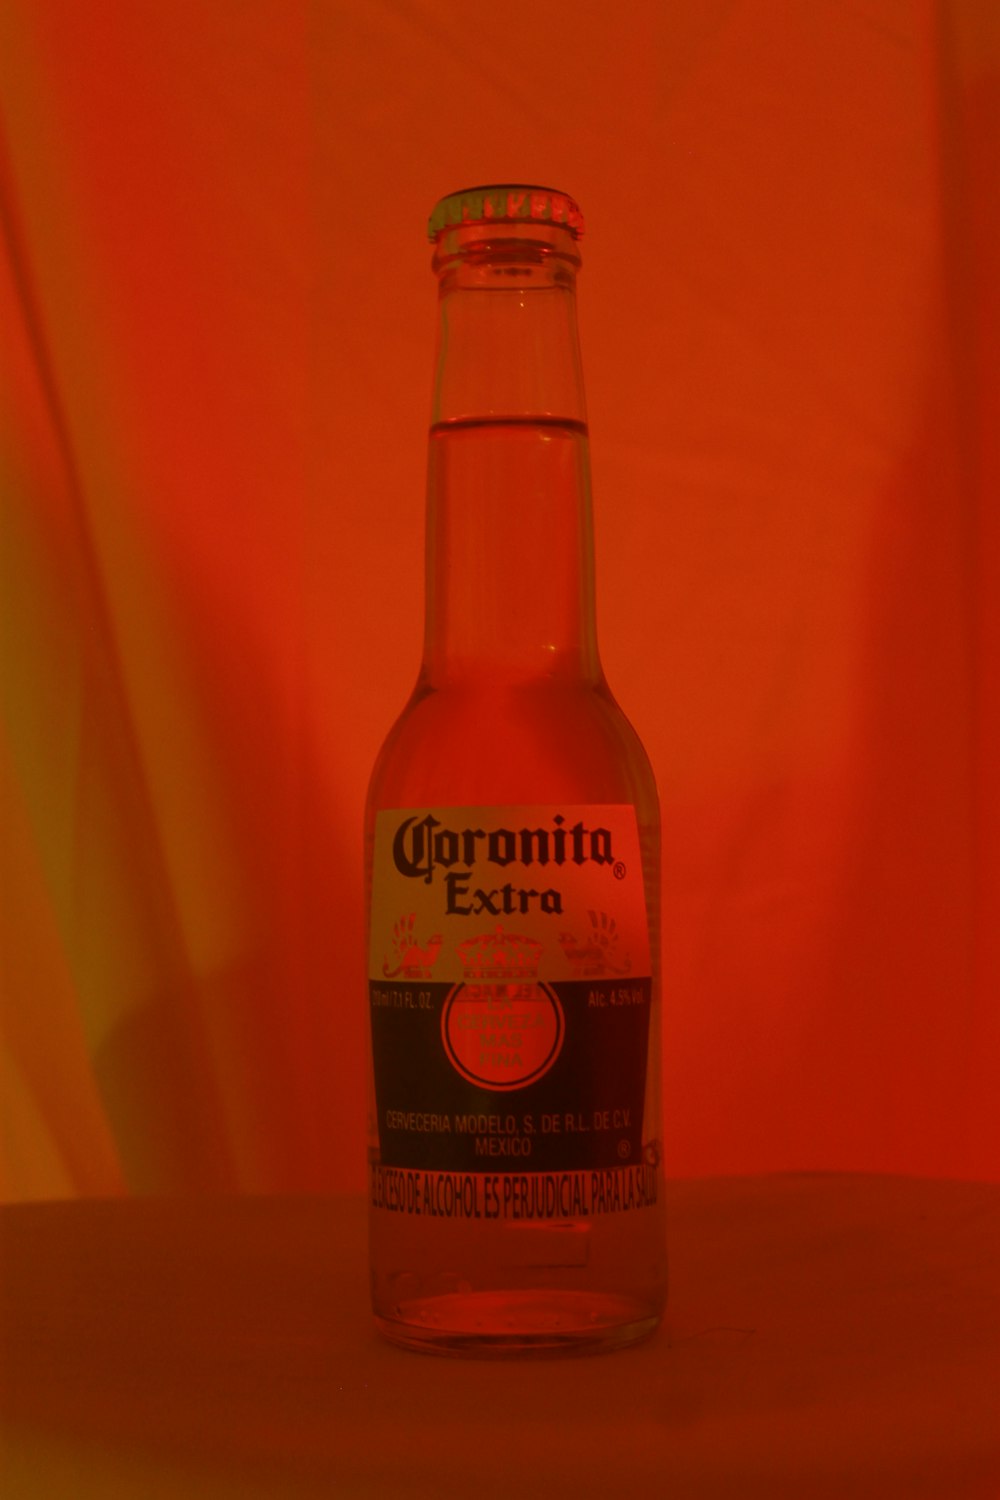 orange and white labeled bottle